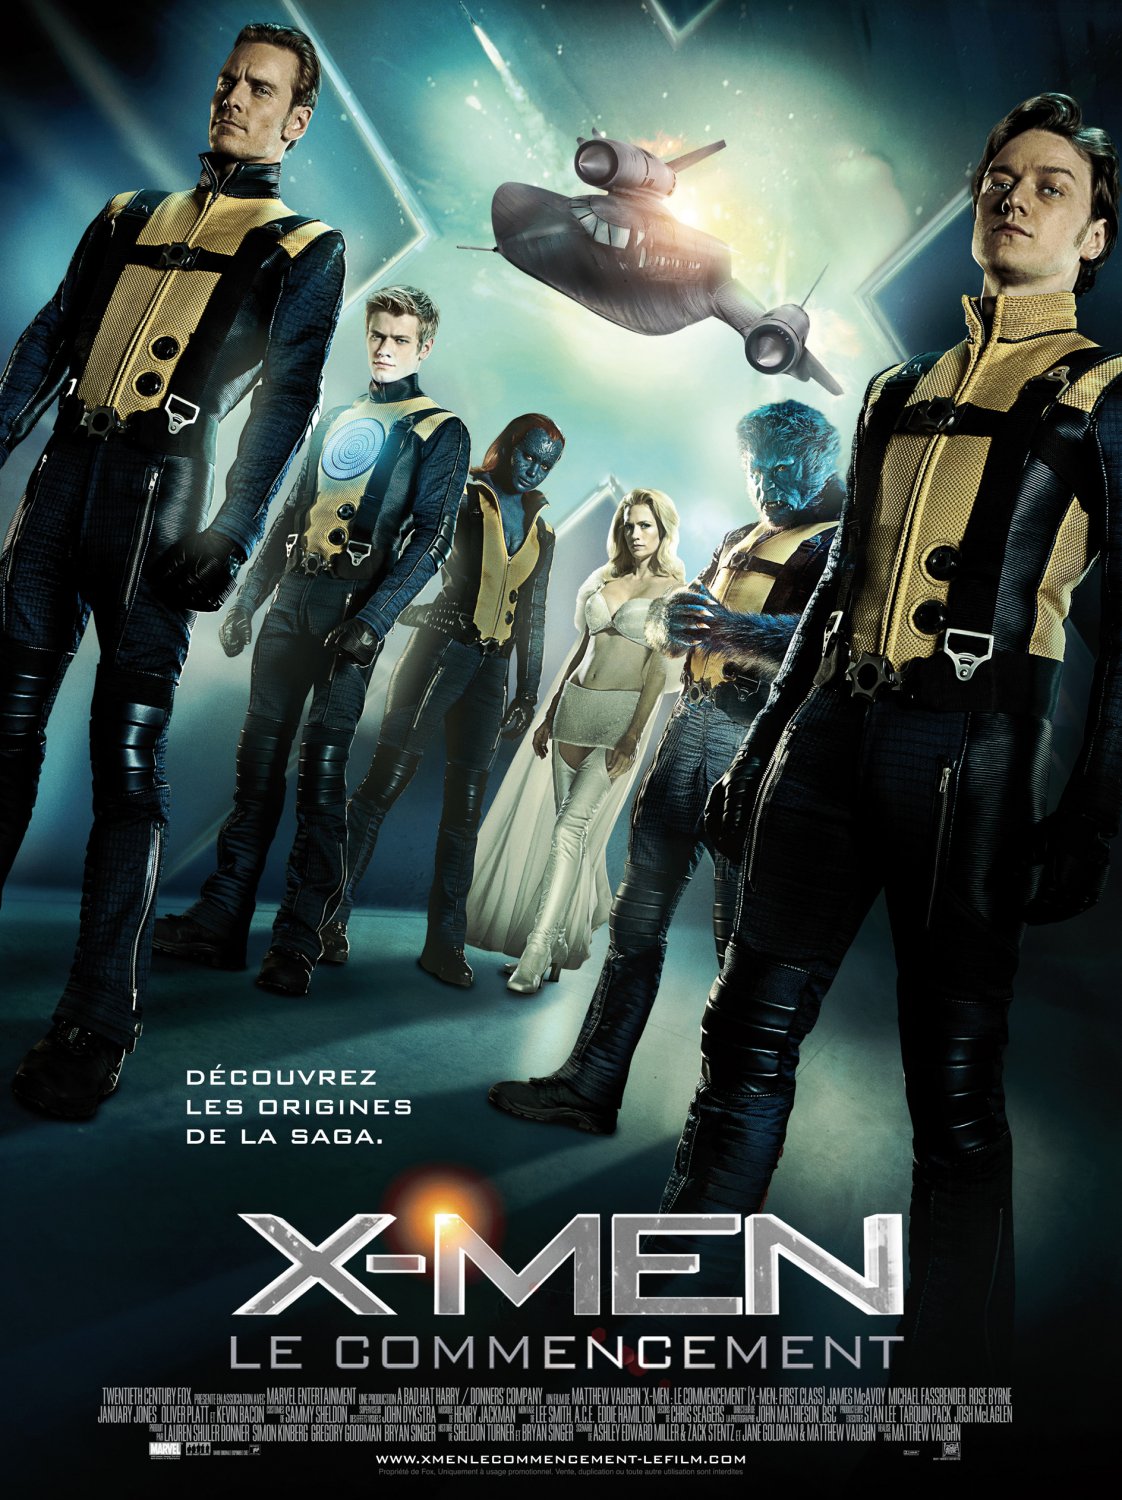 X-men: First Class Art